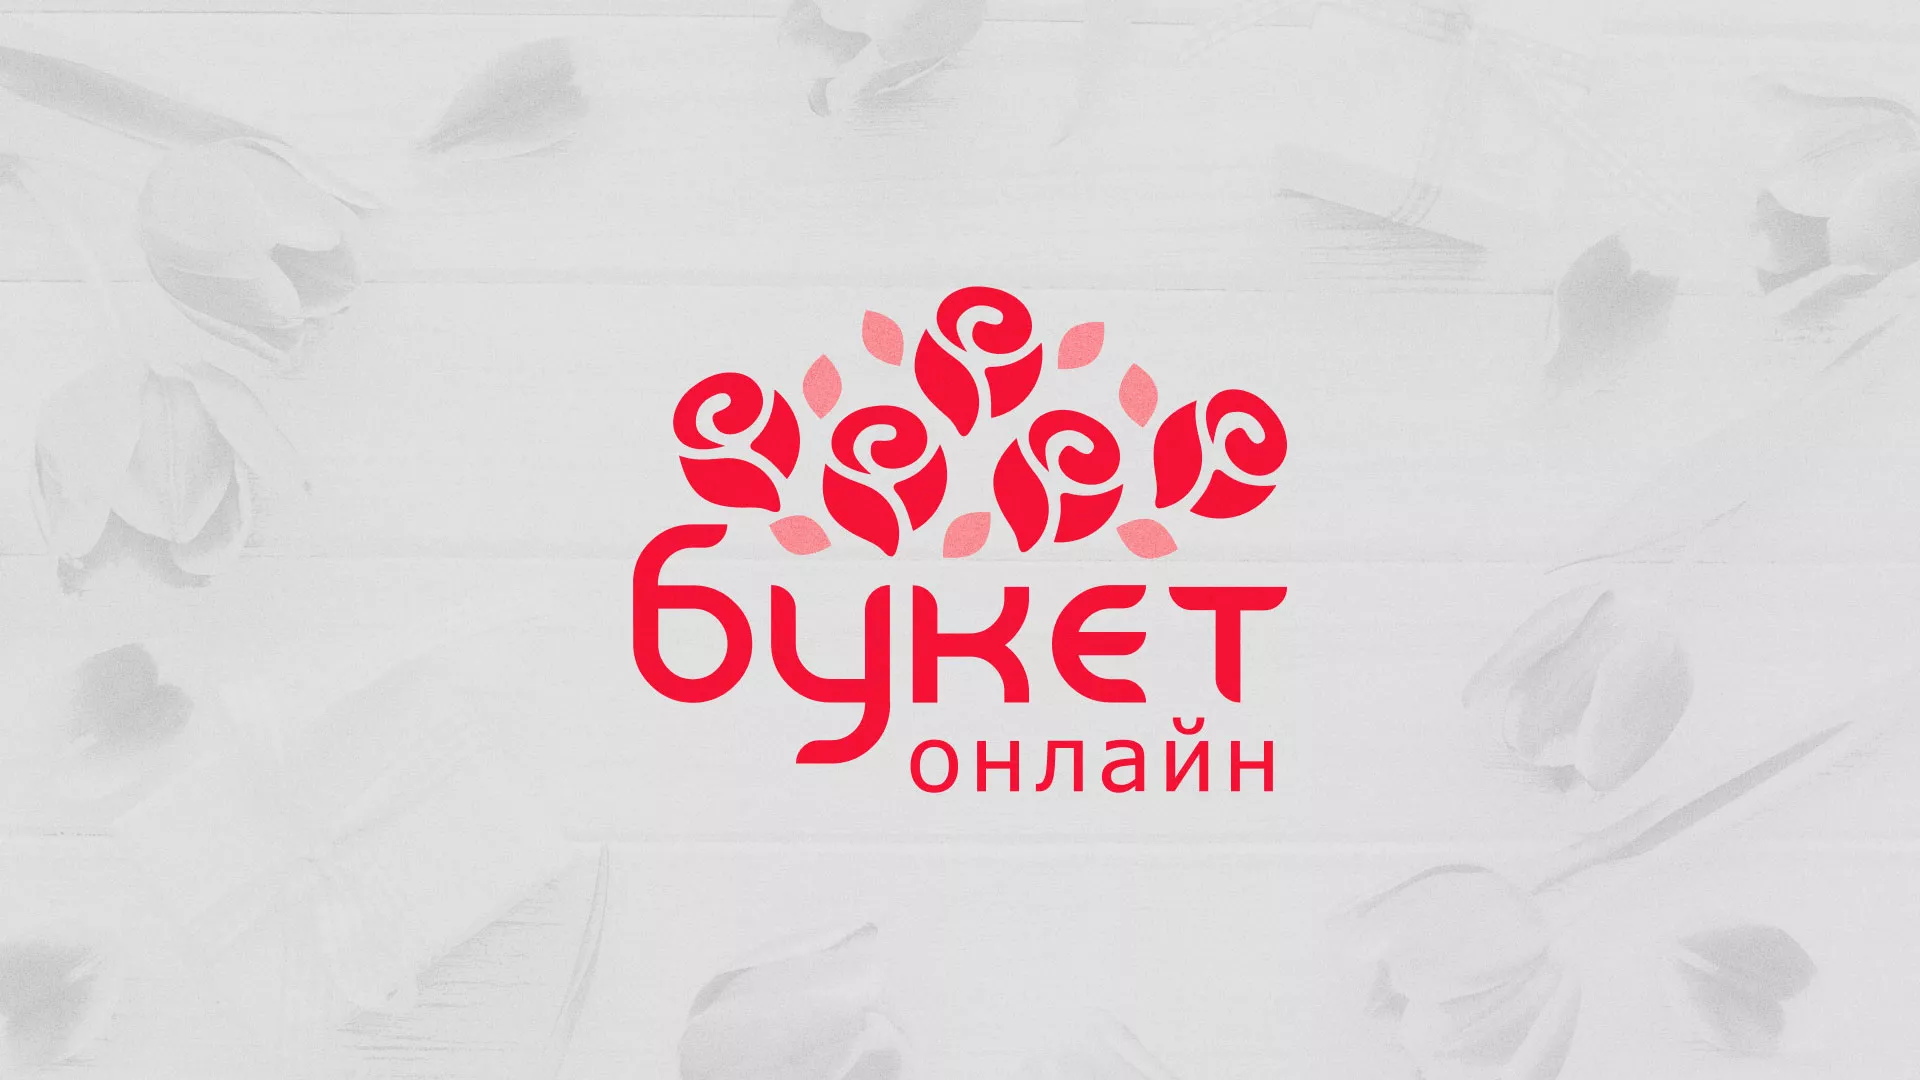 Создание интернет-магазина «Букет-онлайн» по цветам в Лосино-Петровске